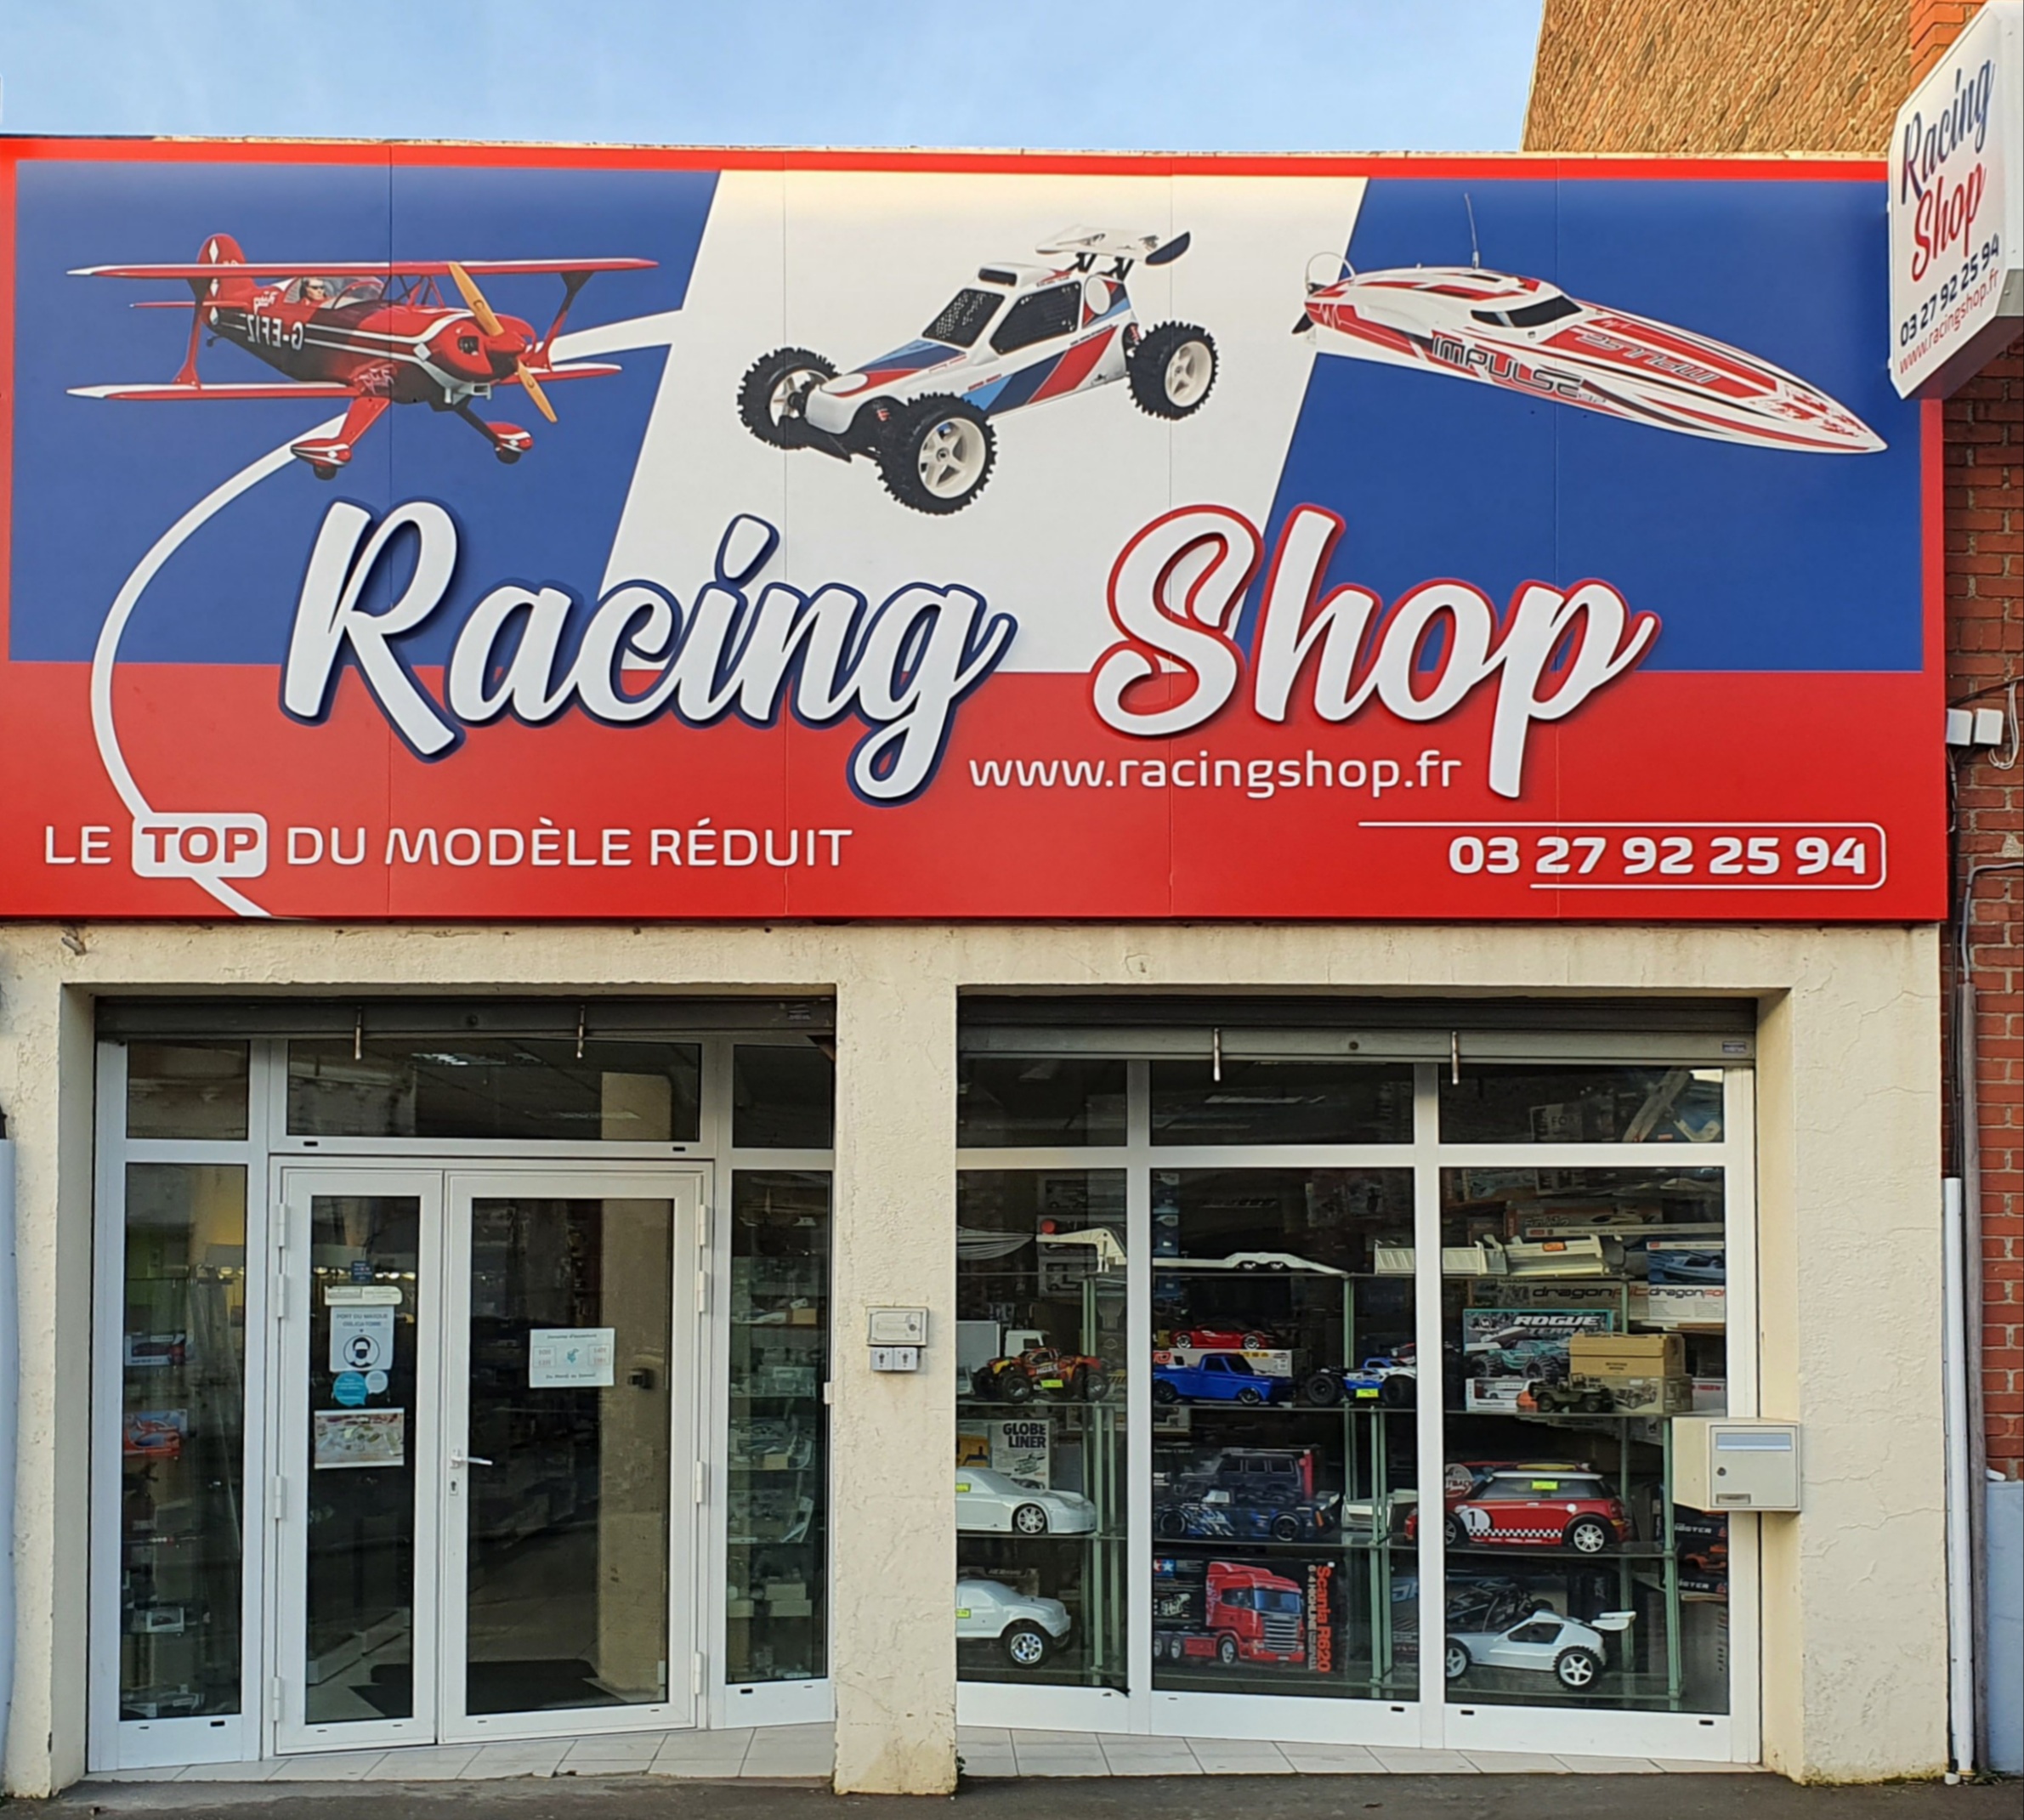 Racing Shop Modélisme: magasin modélisme nord - Racing Shop